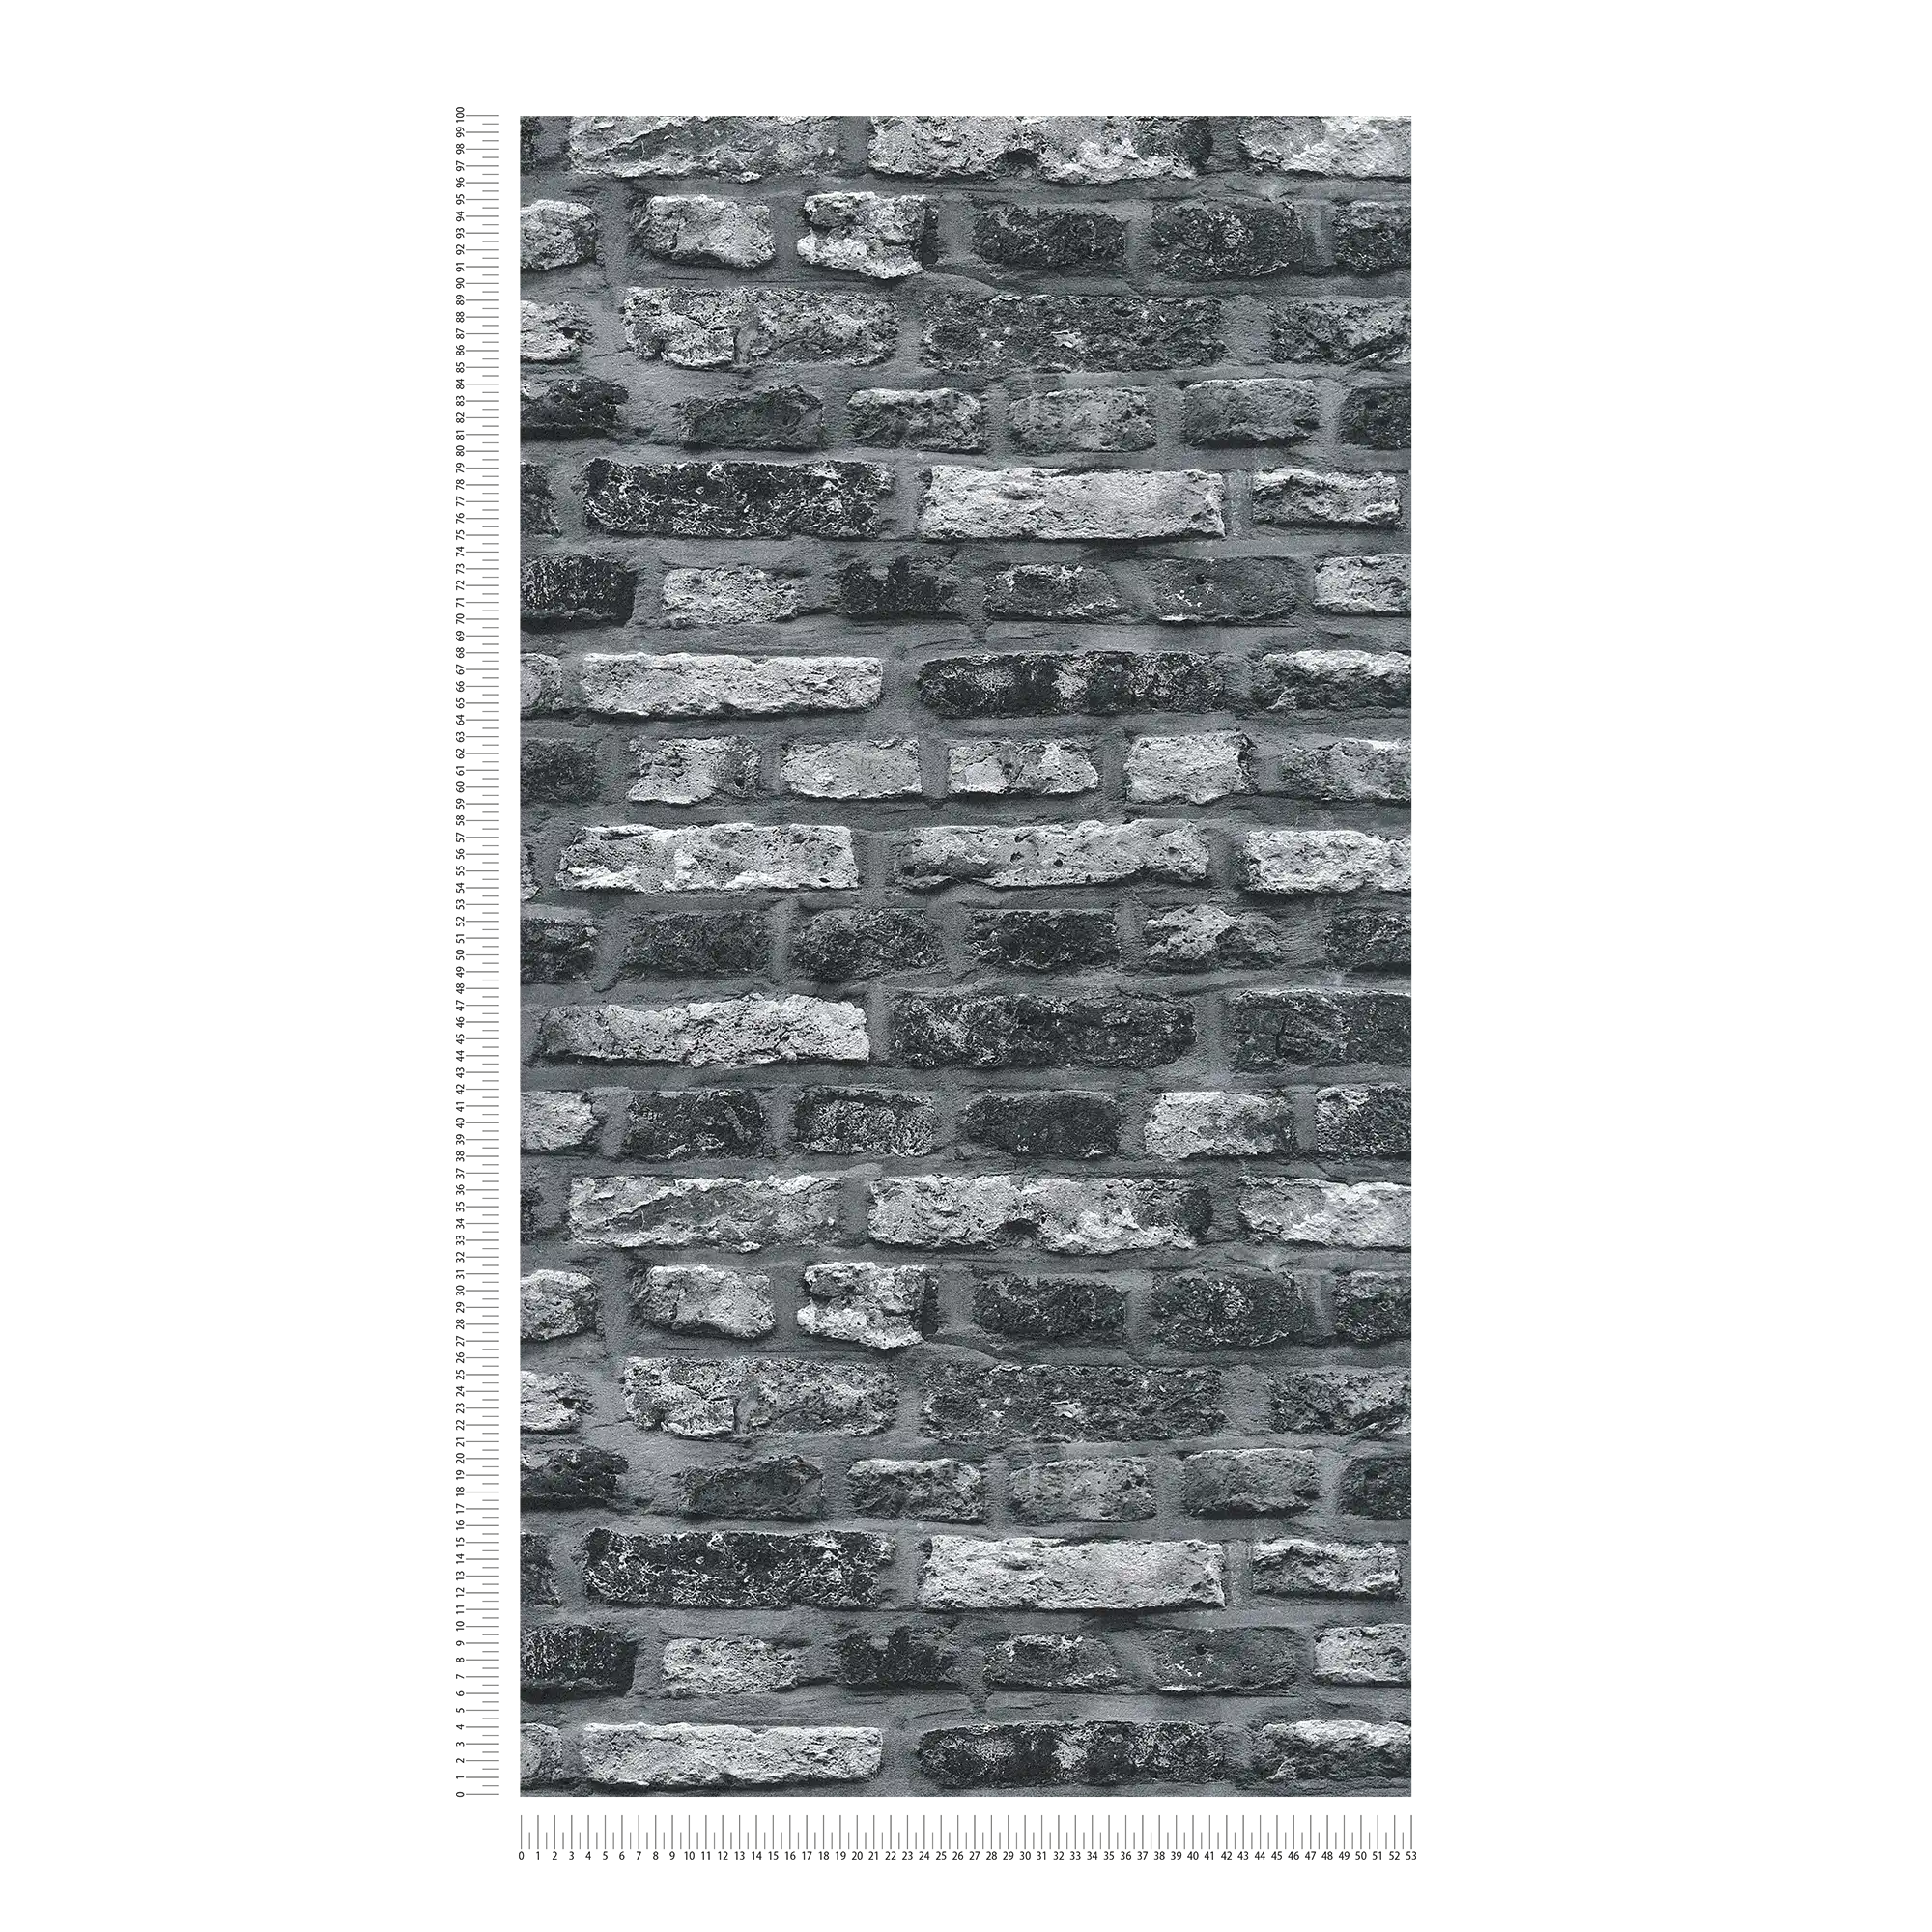             Vliesbehang met steenlook, donker metselwerk - grijs, zwart
        